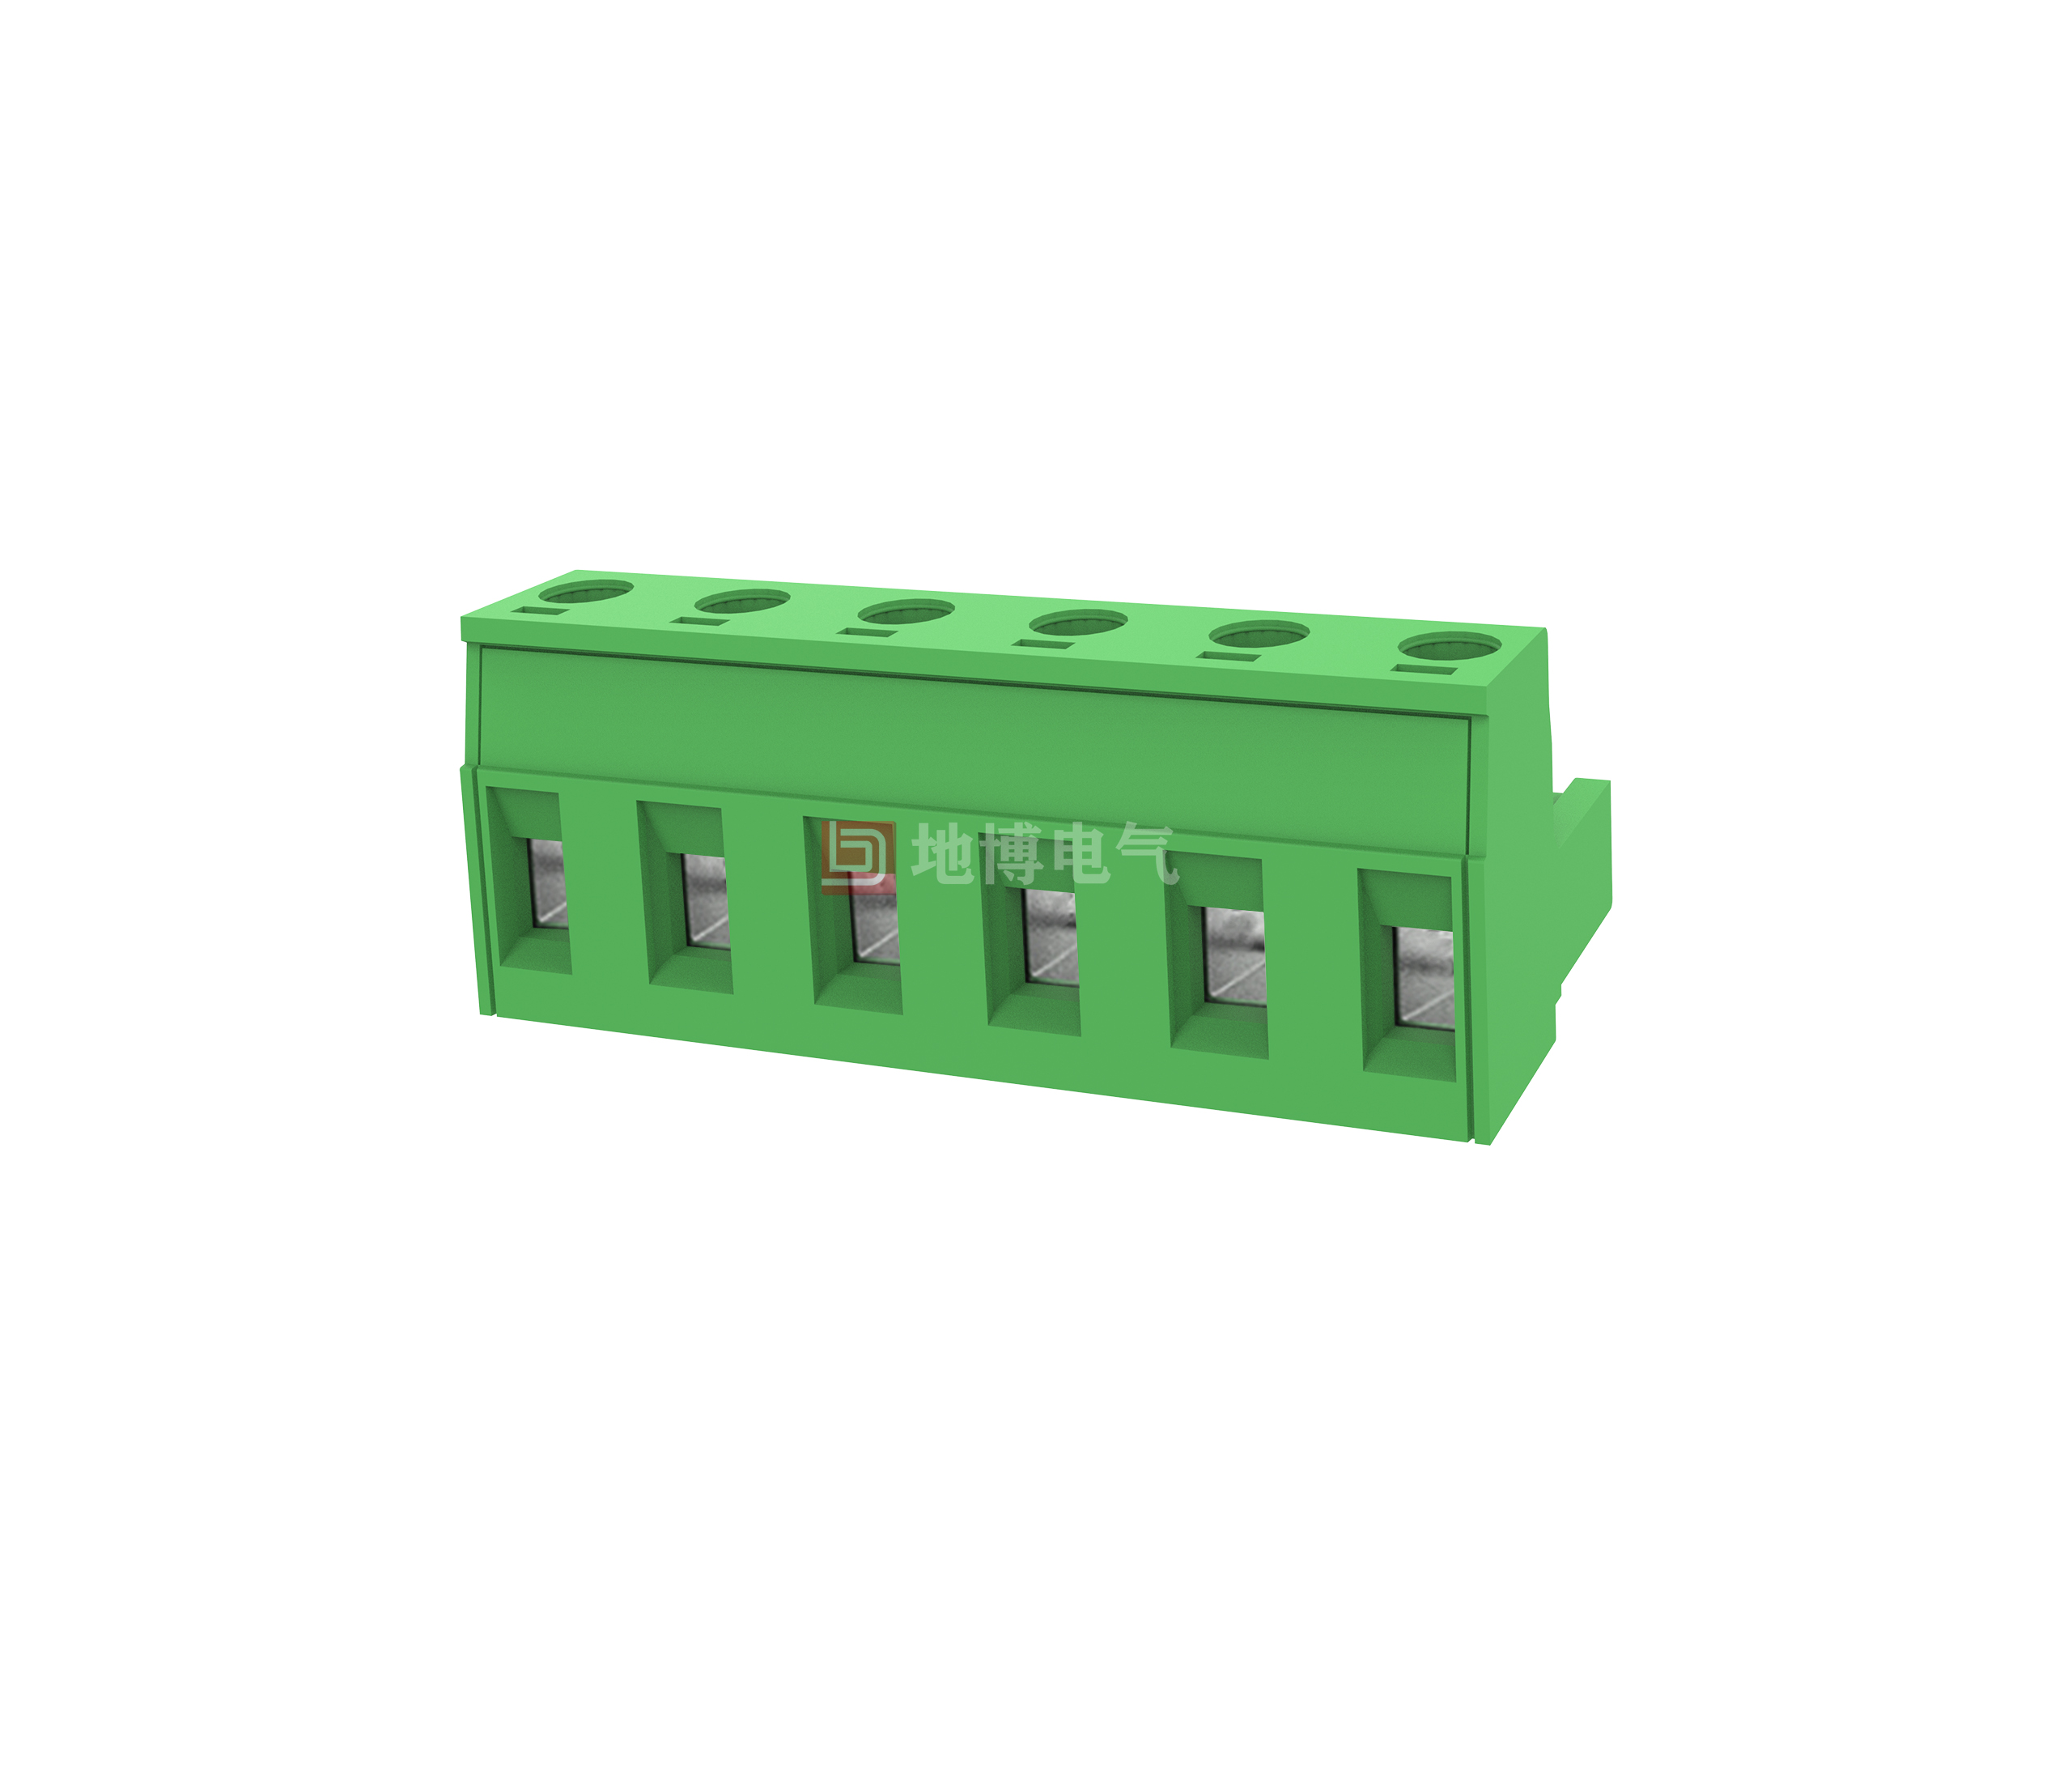 PCB plug-in connector DB2EK-7.5